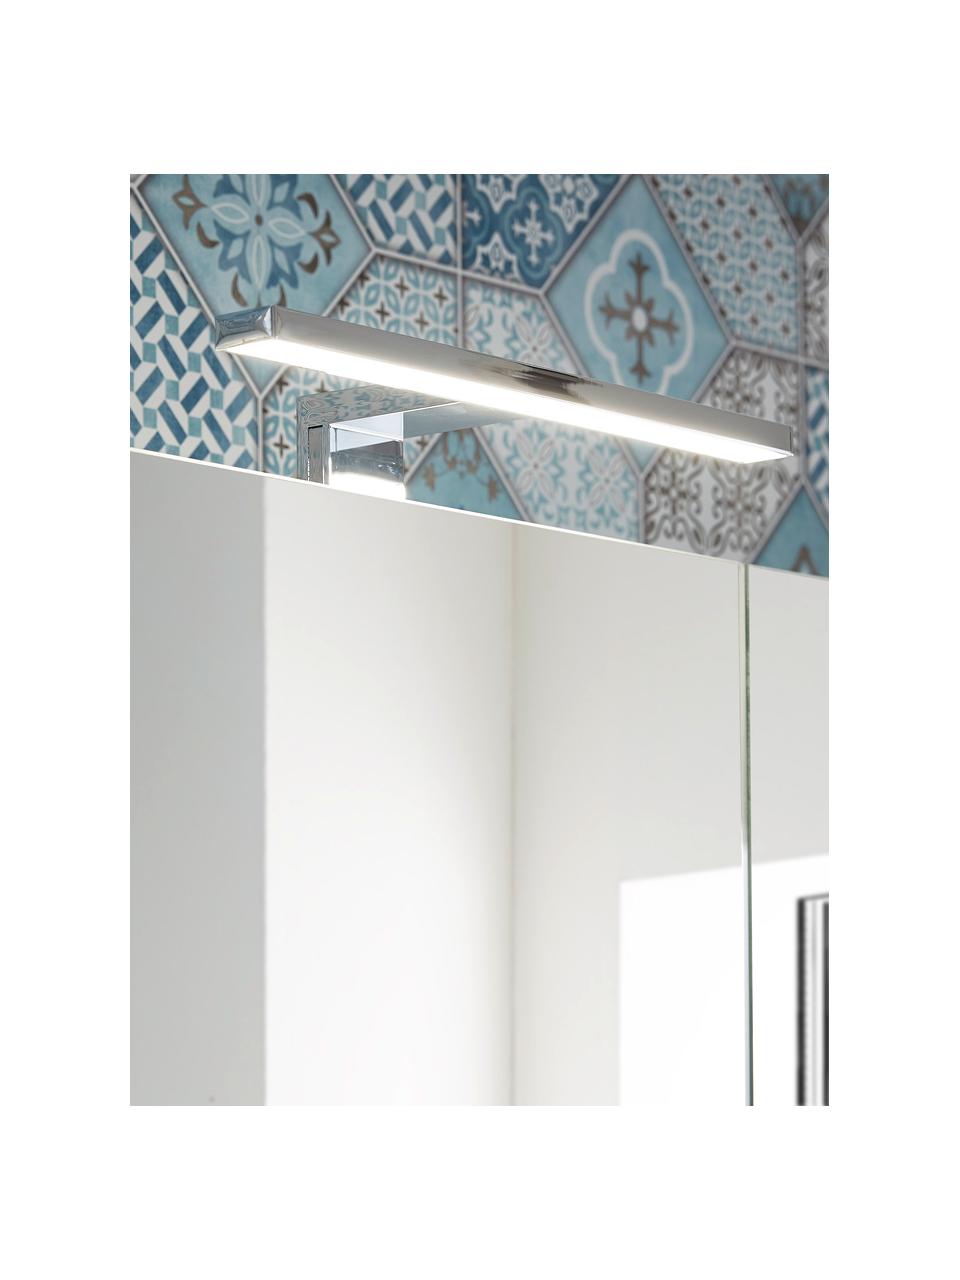 Bad-Spiegelschrank Elisa mit LED-Beleuchtung, Korpus: Spanplatte, melaminbeschi, Spiegelfläche: Spiegelglas, Off White, Silberfarben, B 76 x H 71 cm